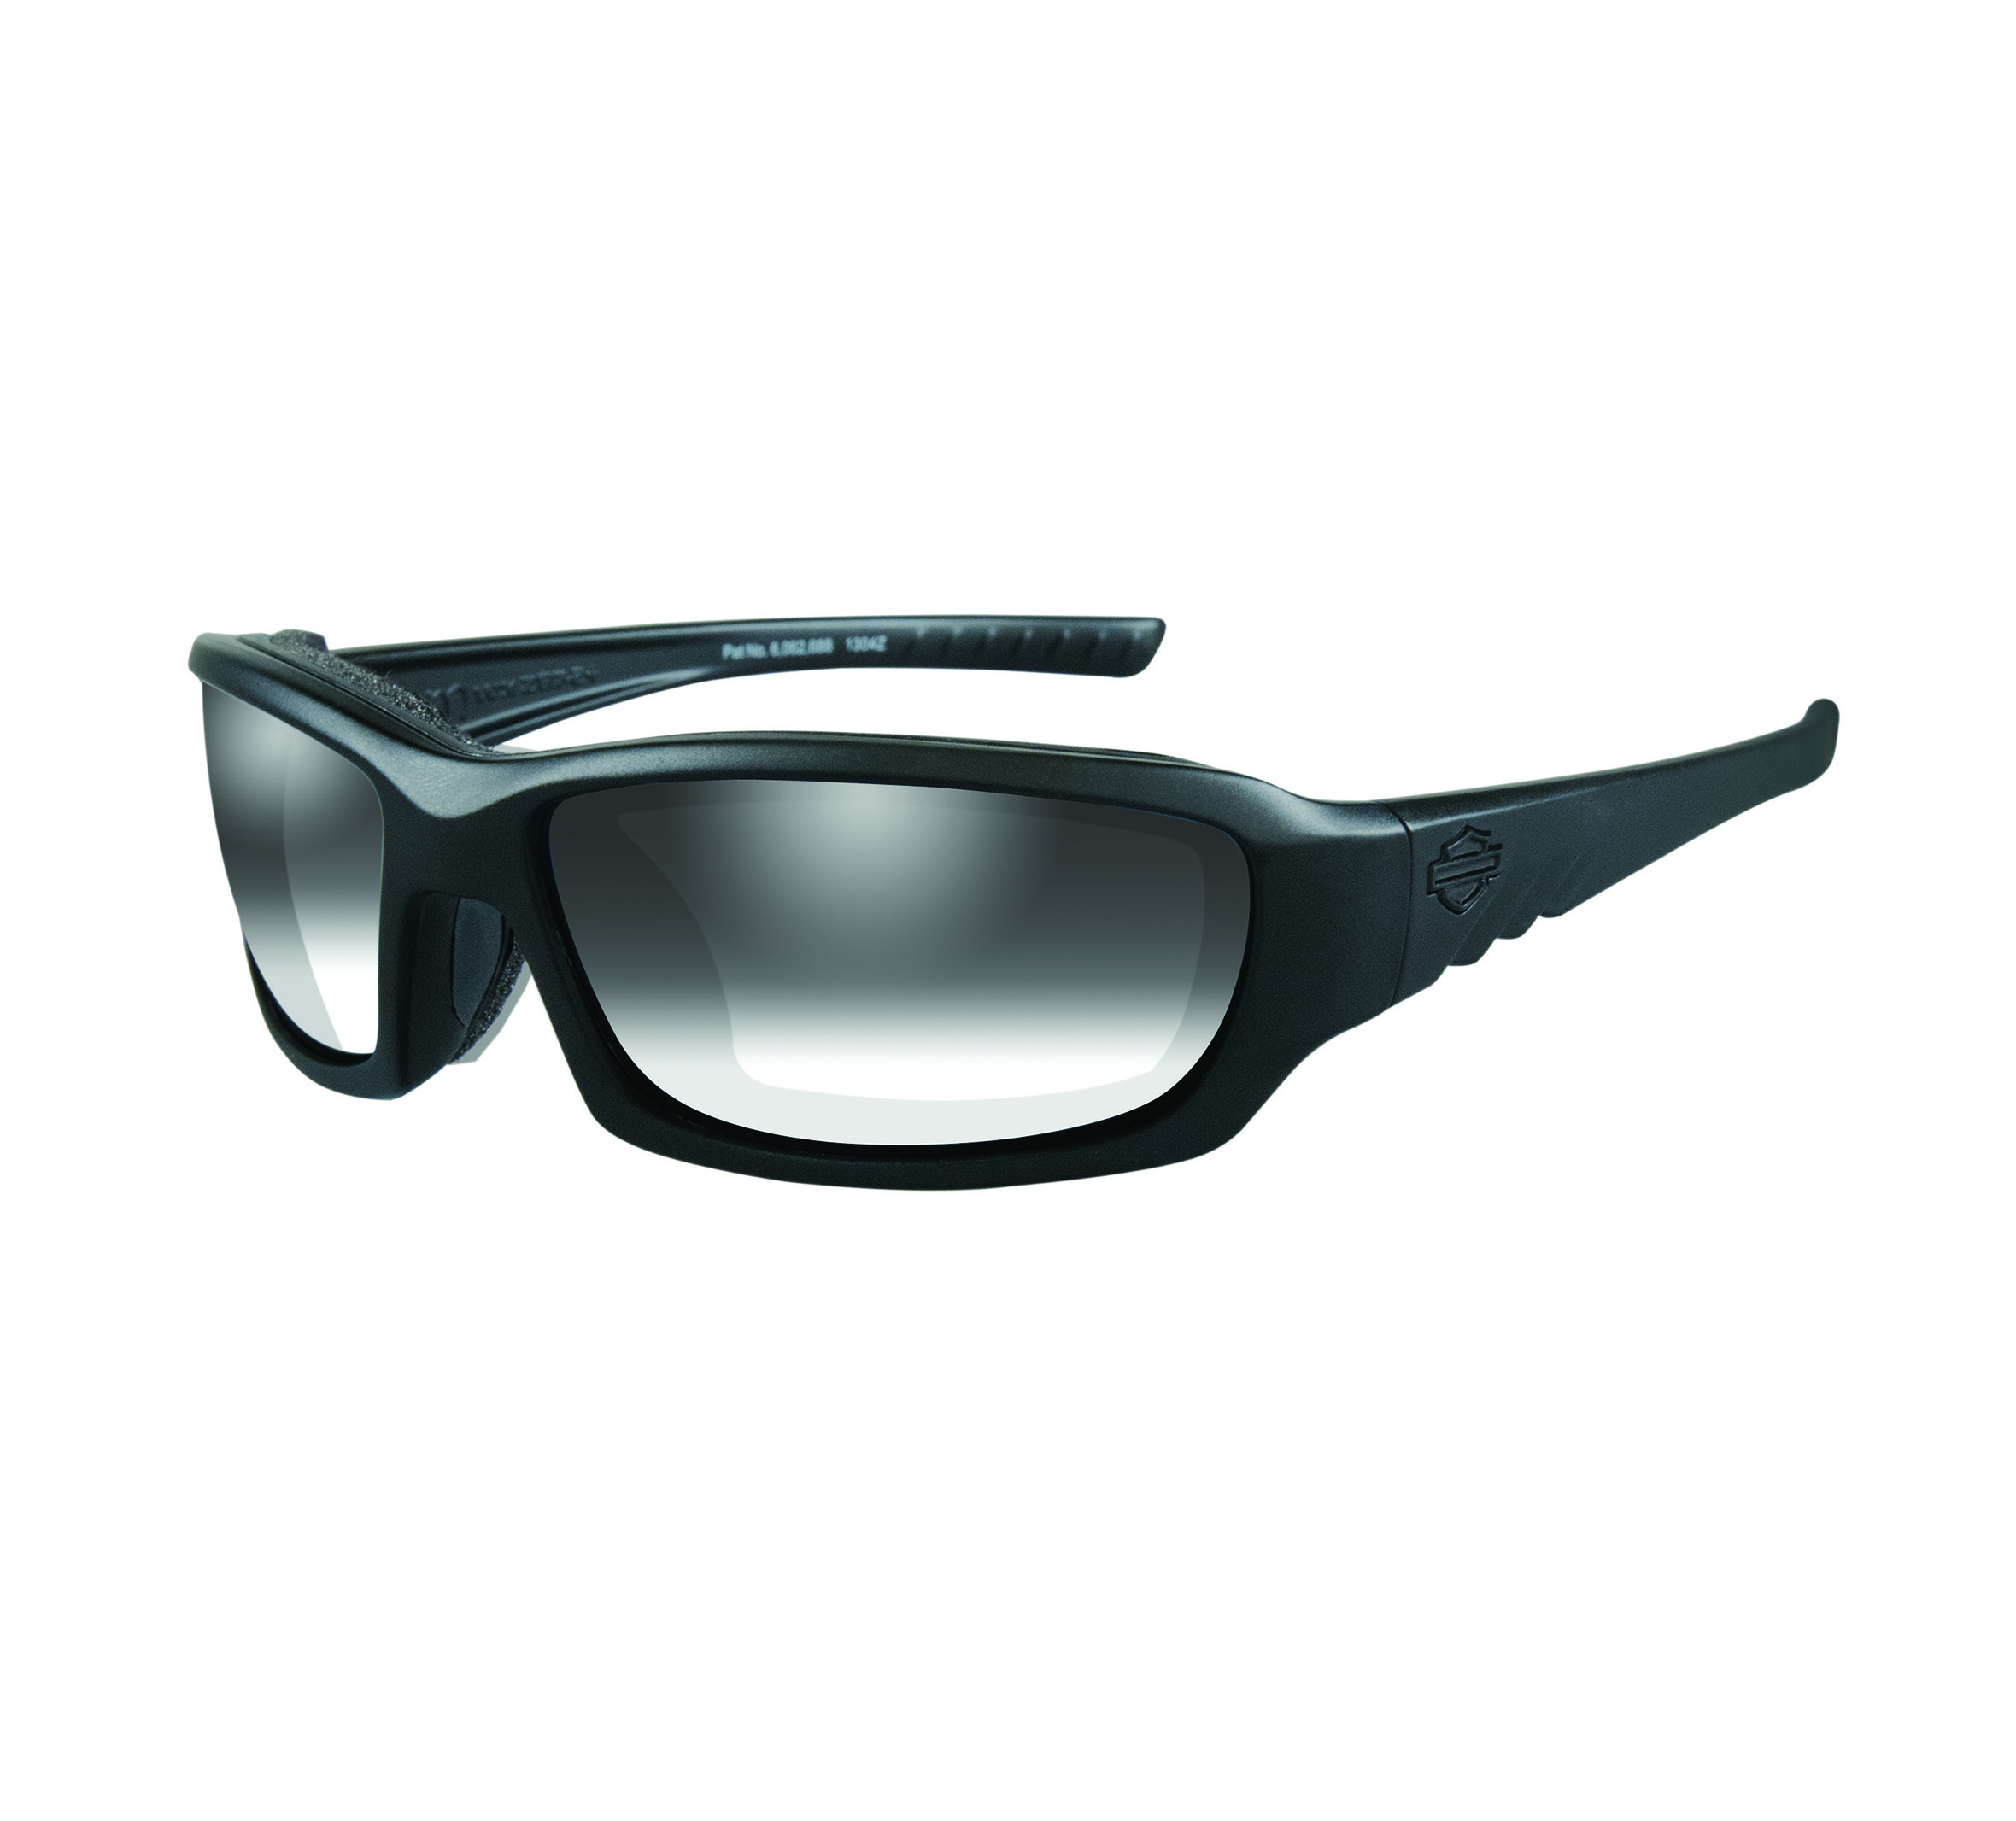 3,50 Titanium Grijs/ Blauw Hd1017 011 Harley Davidson Leesbril Accessoires Zonnebrillen & Eyewear Leesbrillen 0,25 tot 